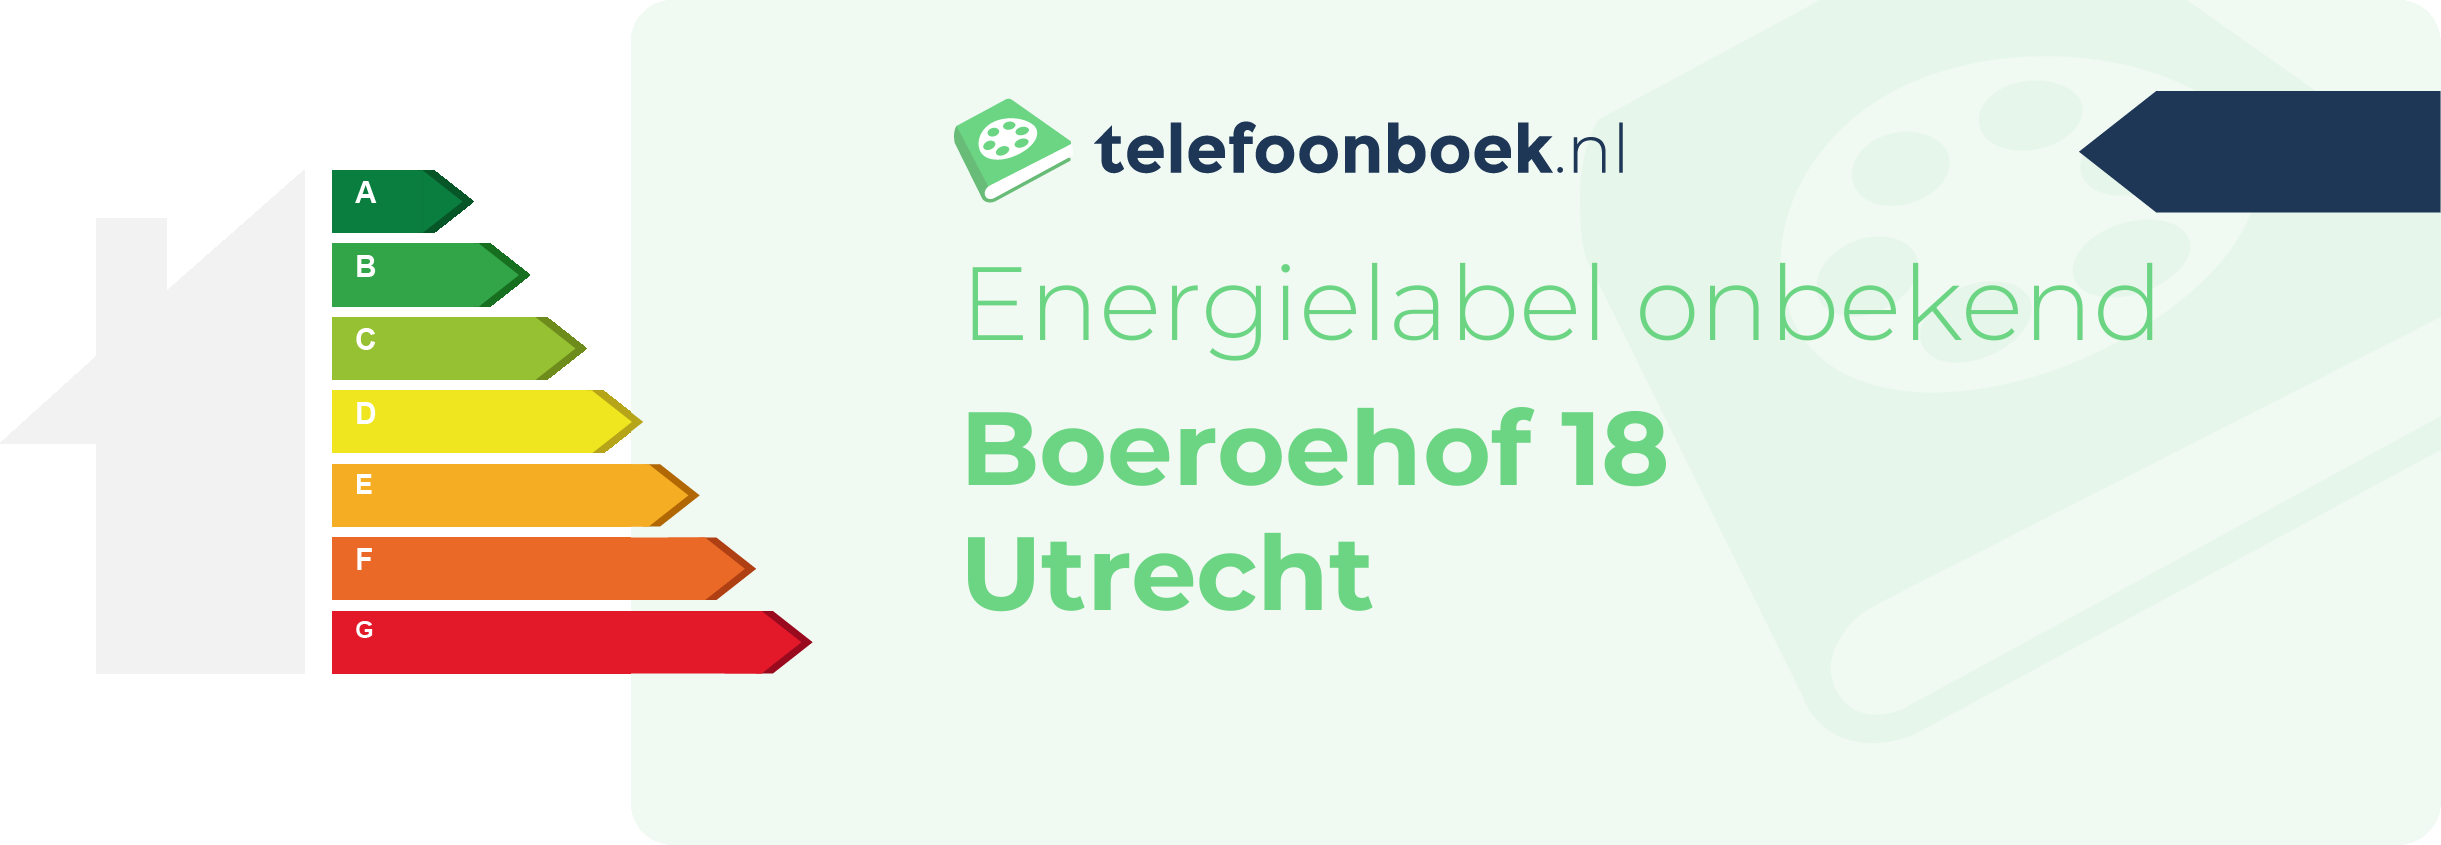 Energielabel Boeroehof 18 Utrecht